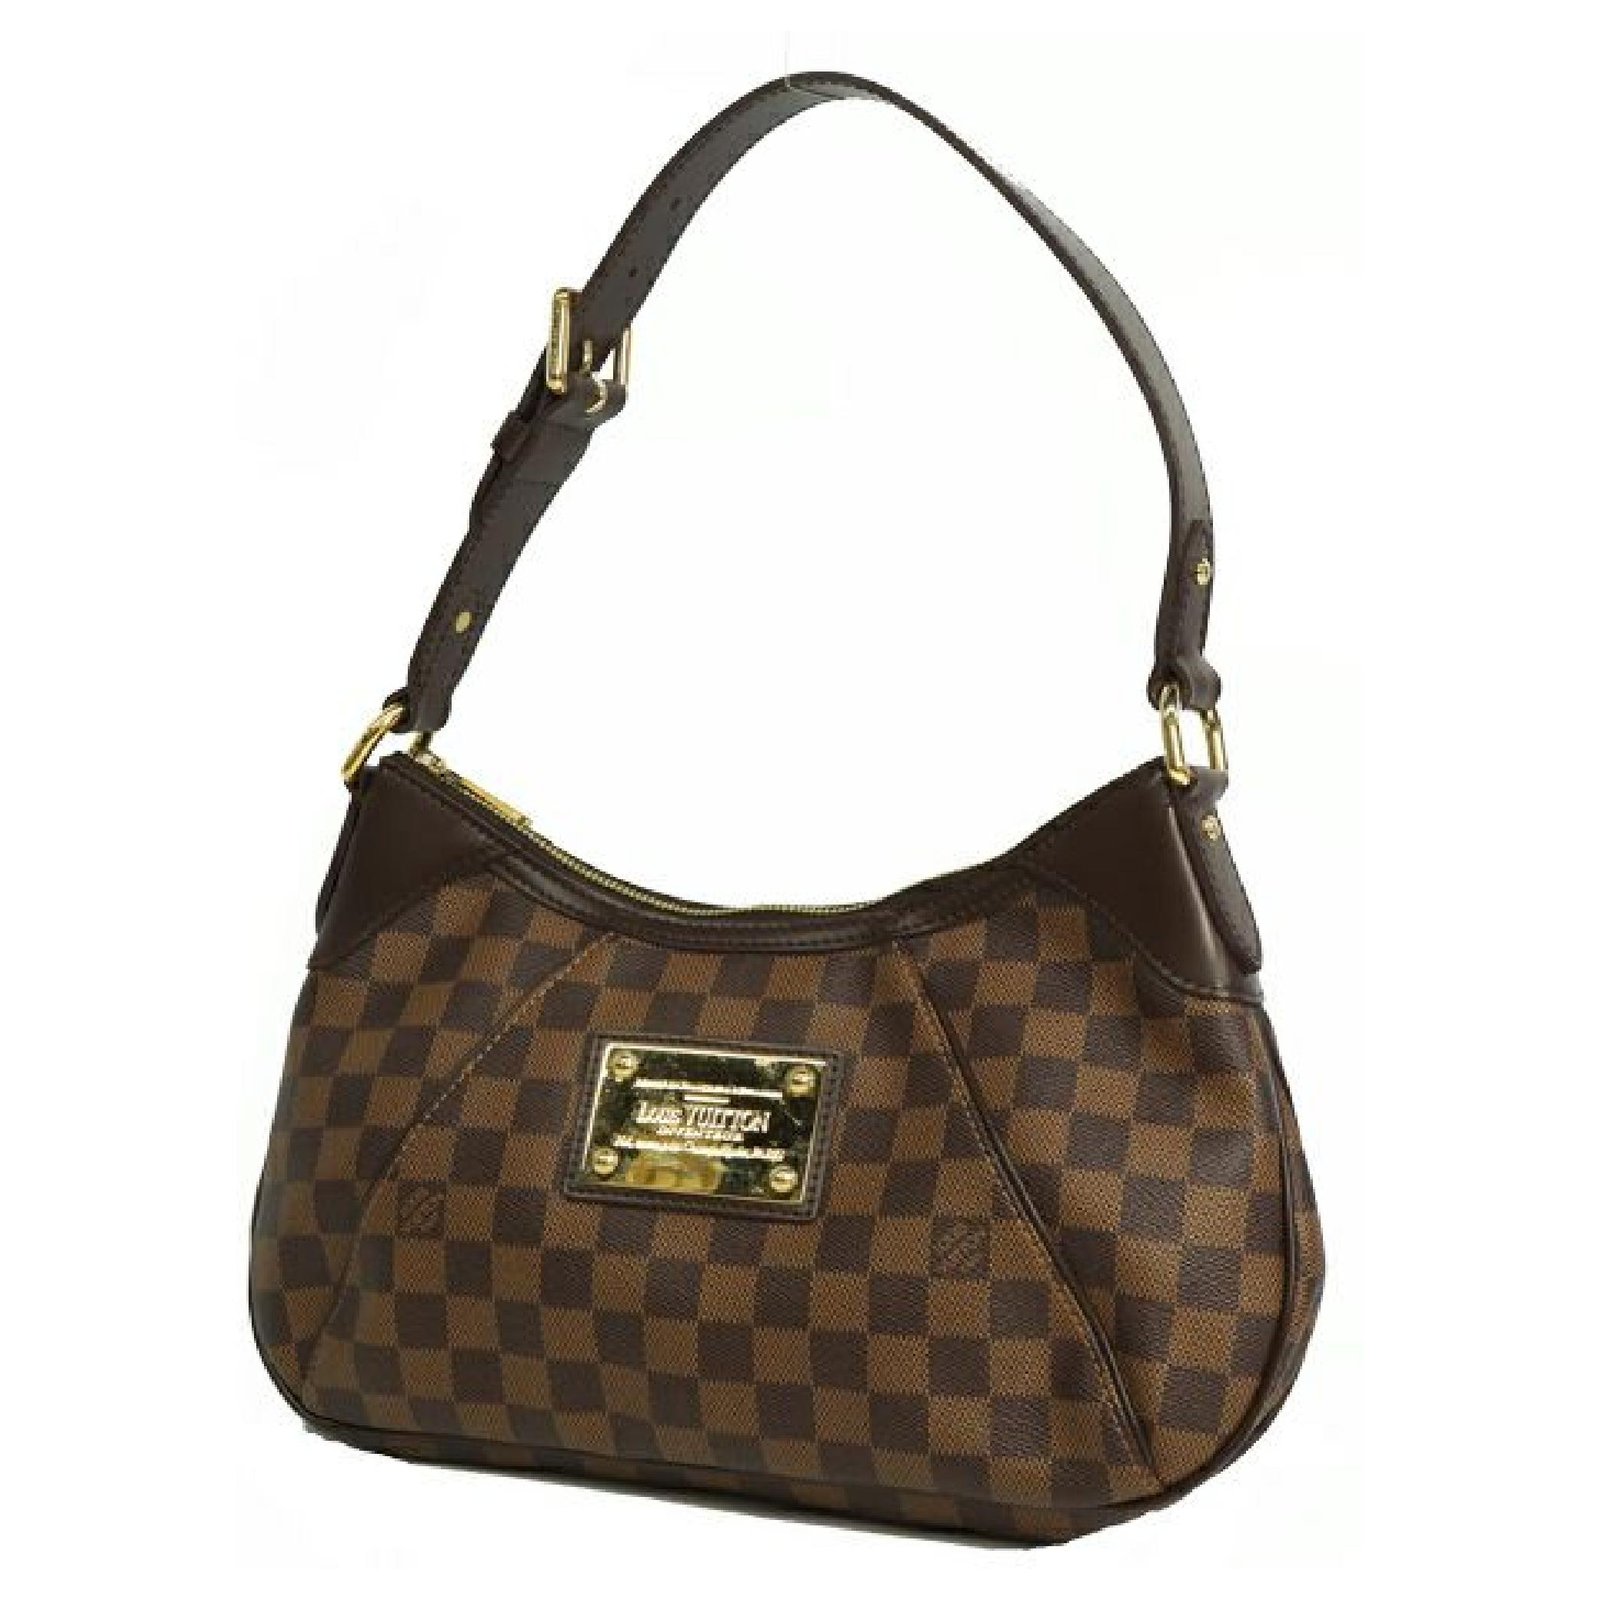 Authentic Louis Vuitton Thames PM handbag shoulder bag